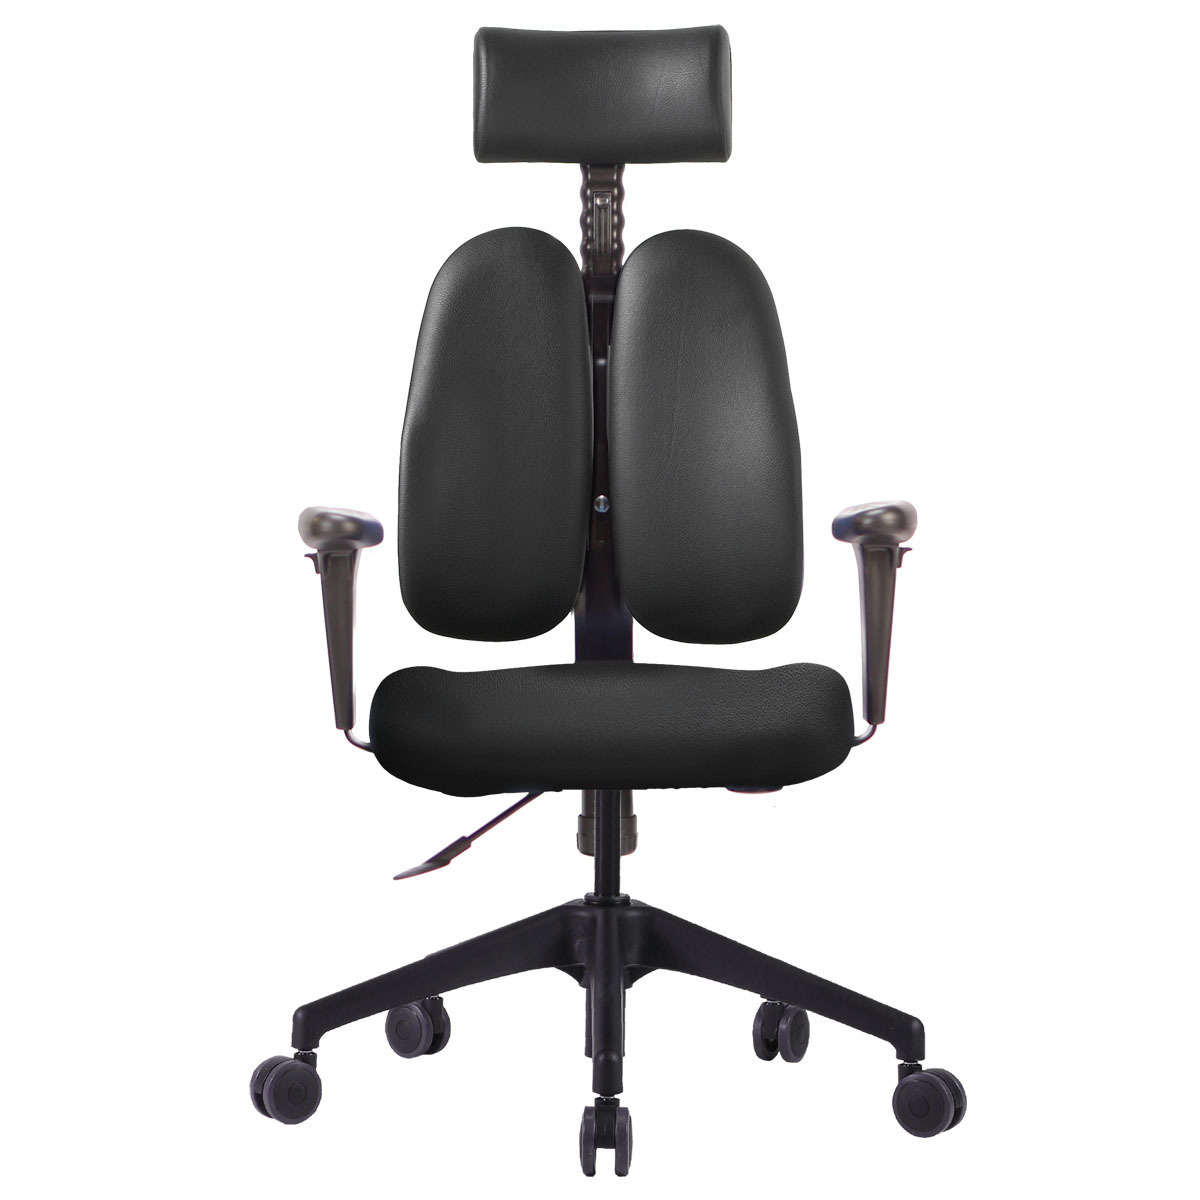 듀오백 사무용 의자 DB-5200 Duoback Office Chair 사무용의자, 그린(패브릭) 